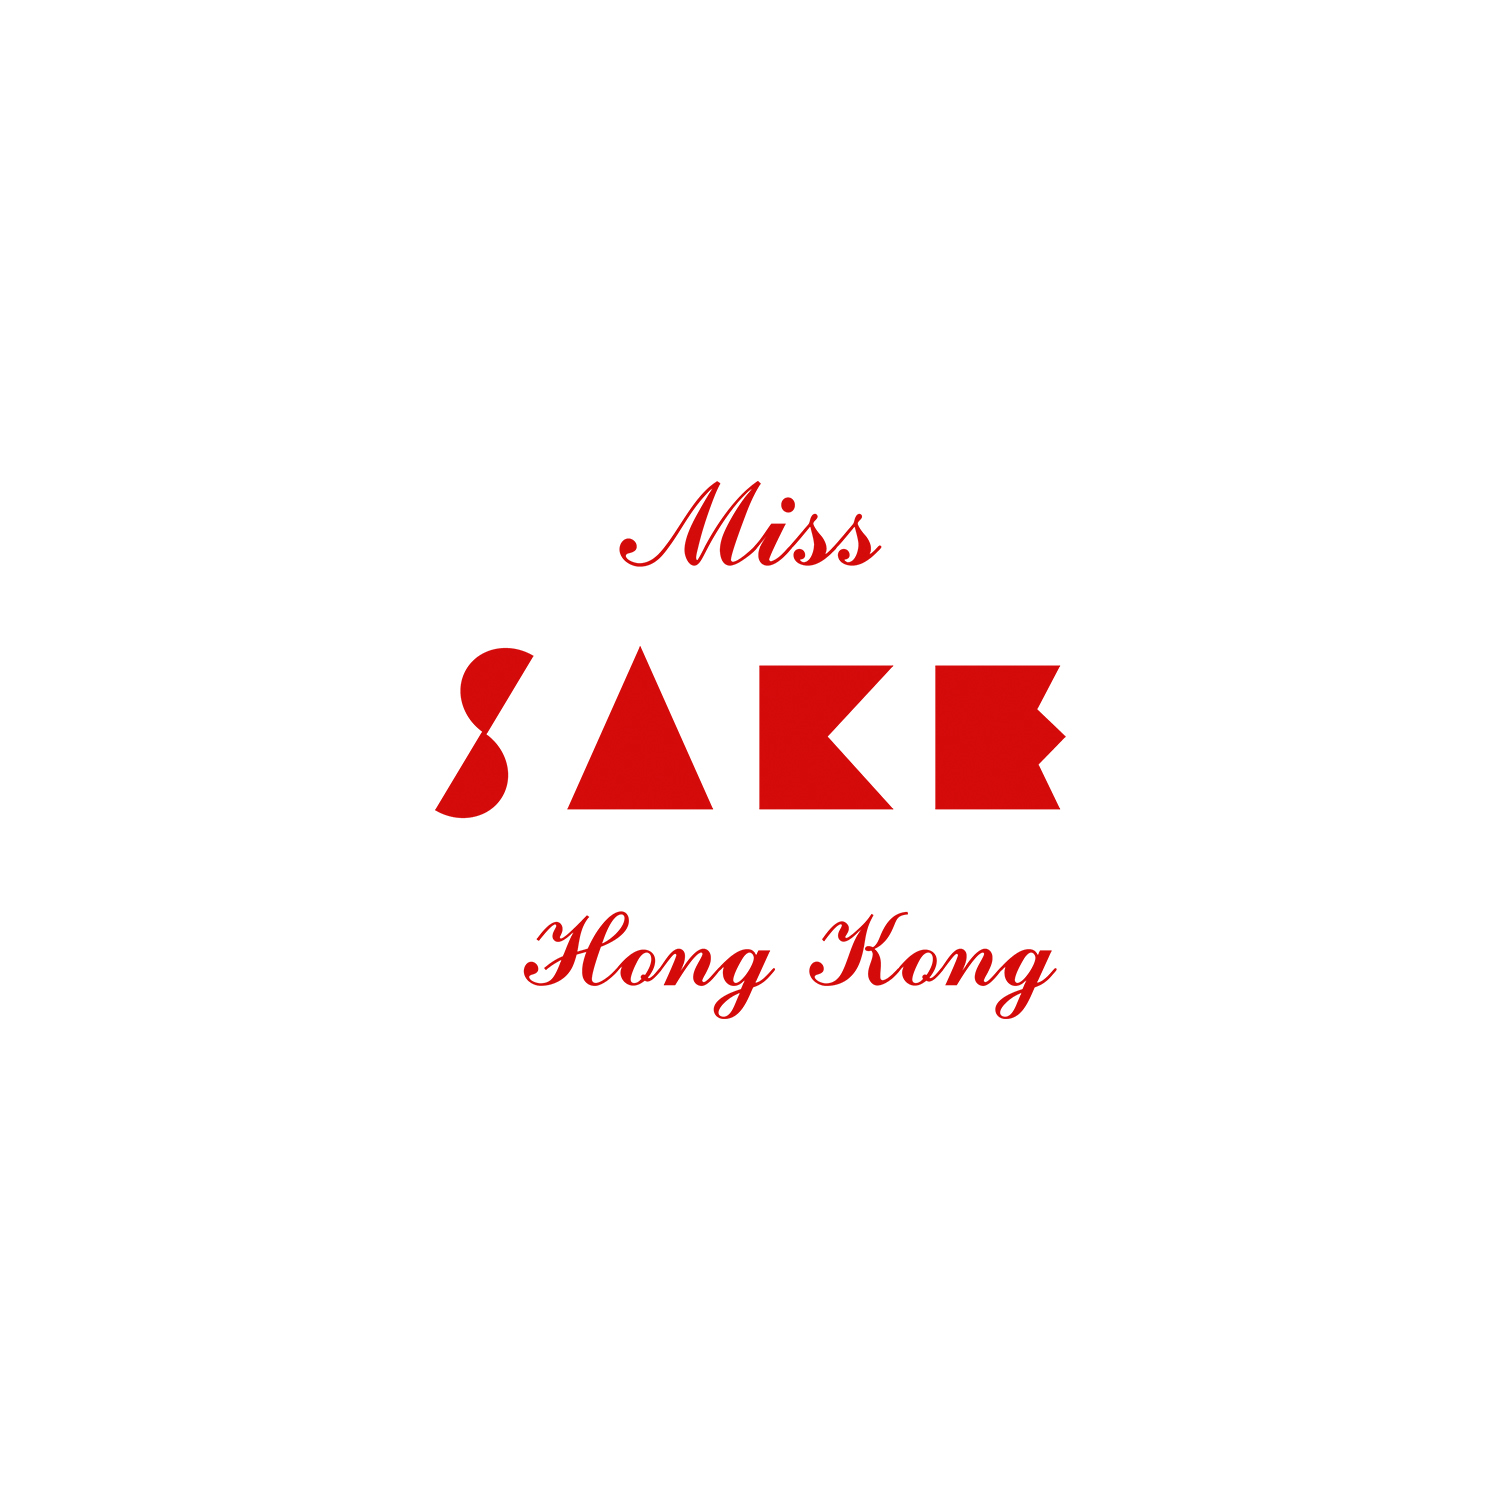 Miss Sake Hong Kong